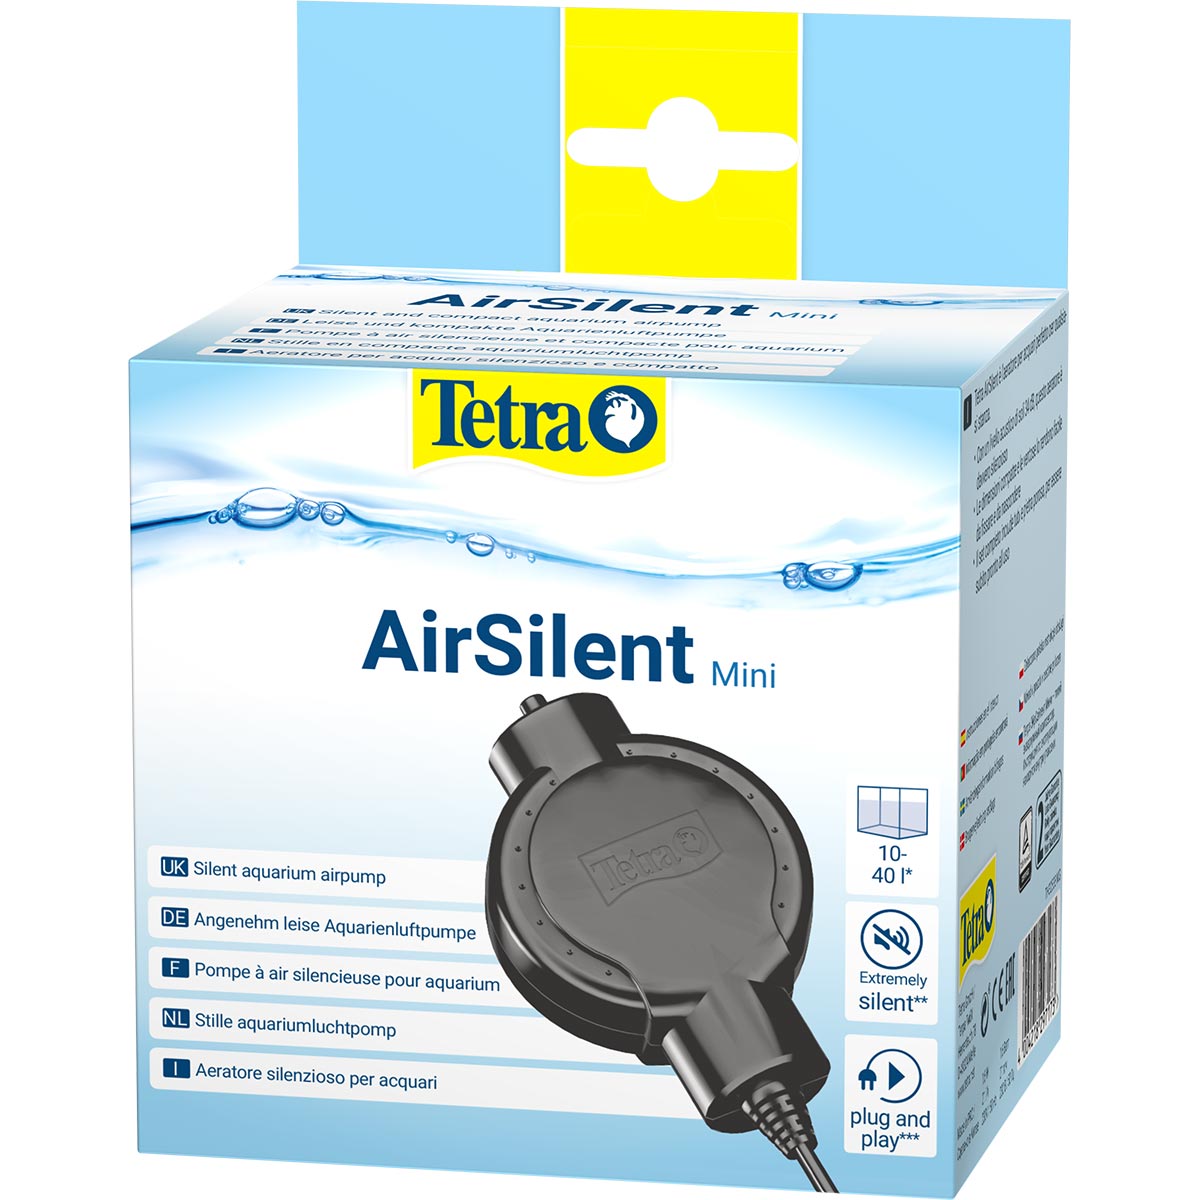 Tetra AirSilent Luftpumpe günstig kaufen bei ZooRoyal